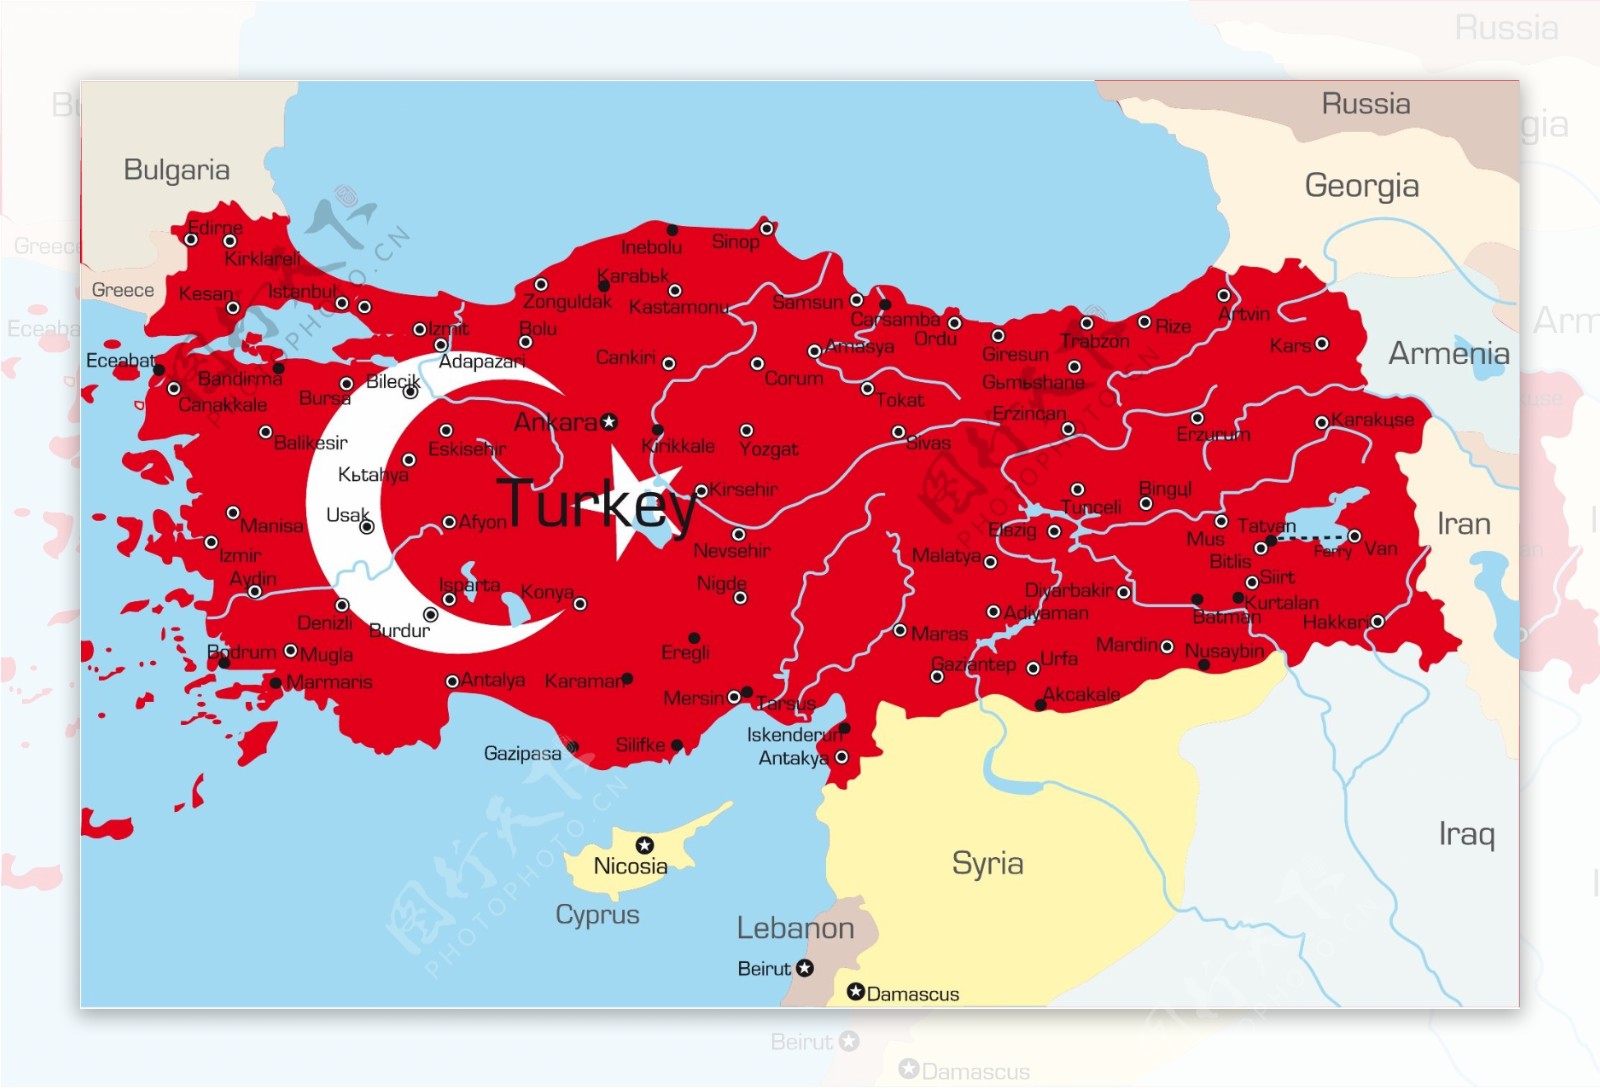 土耳其国家版图矢量图